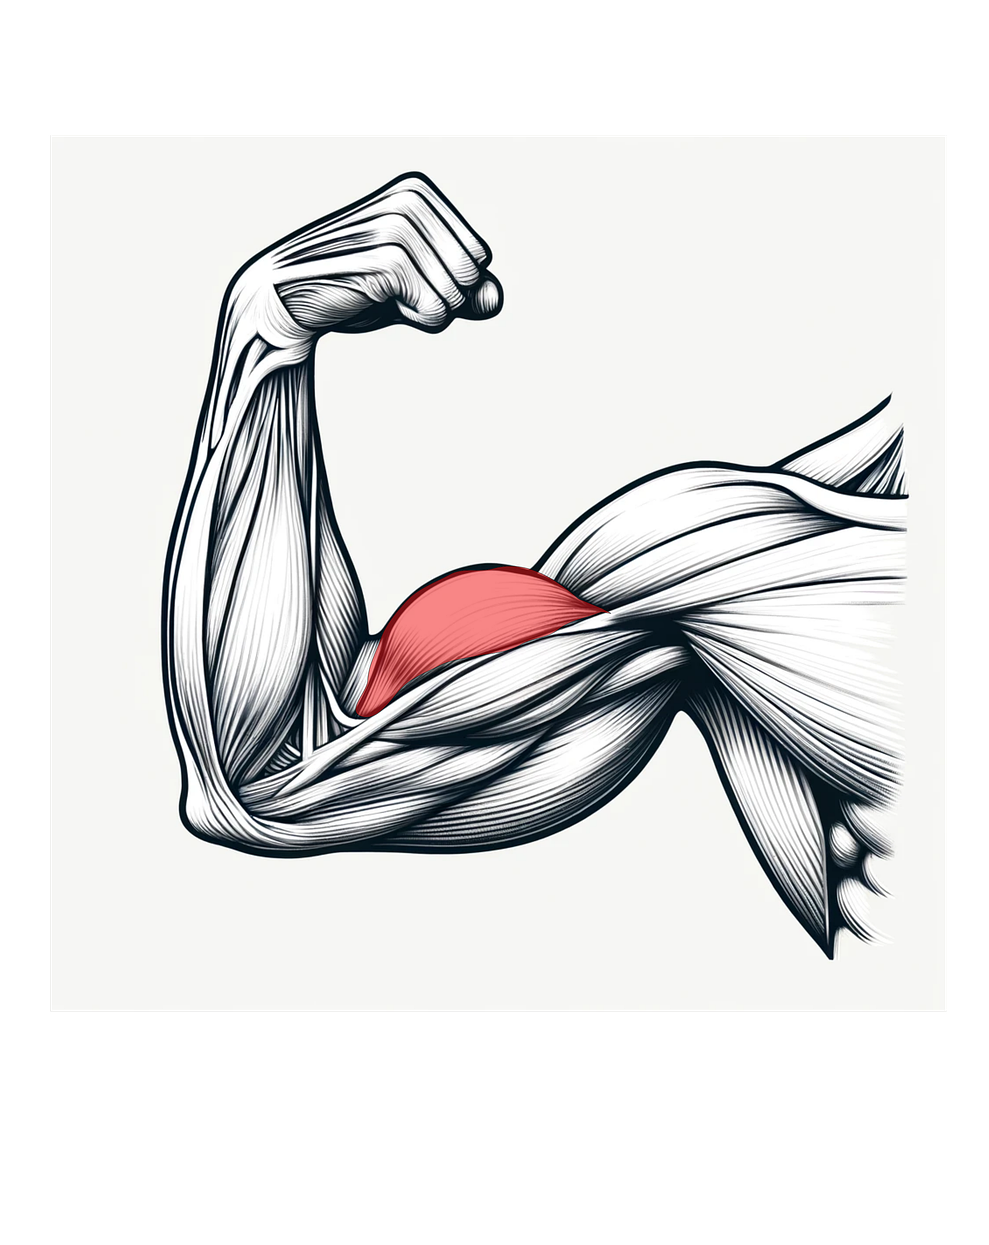 Músculos agonistas